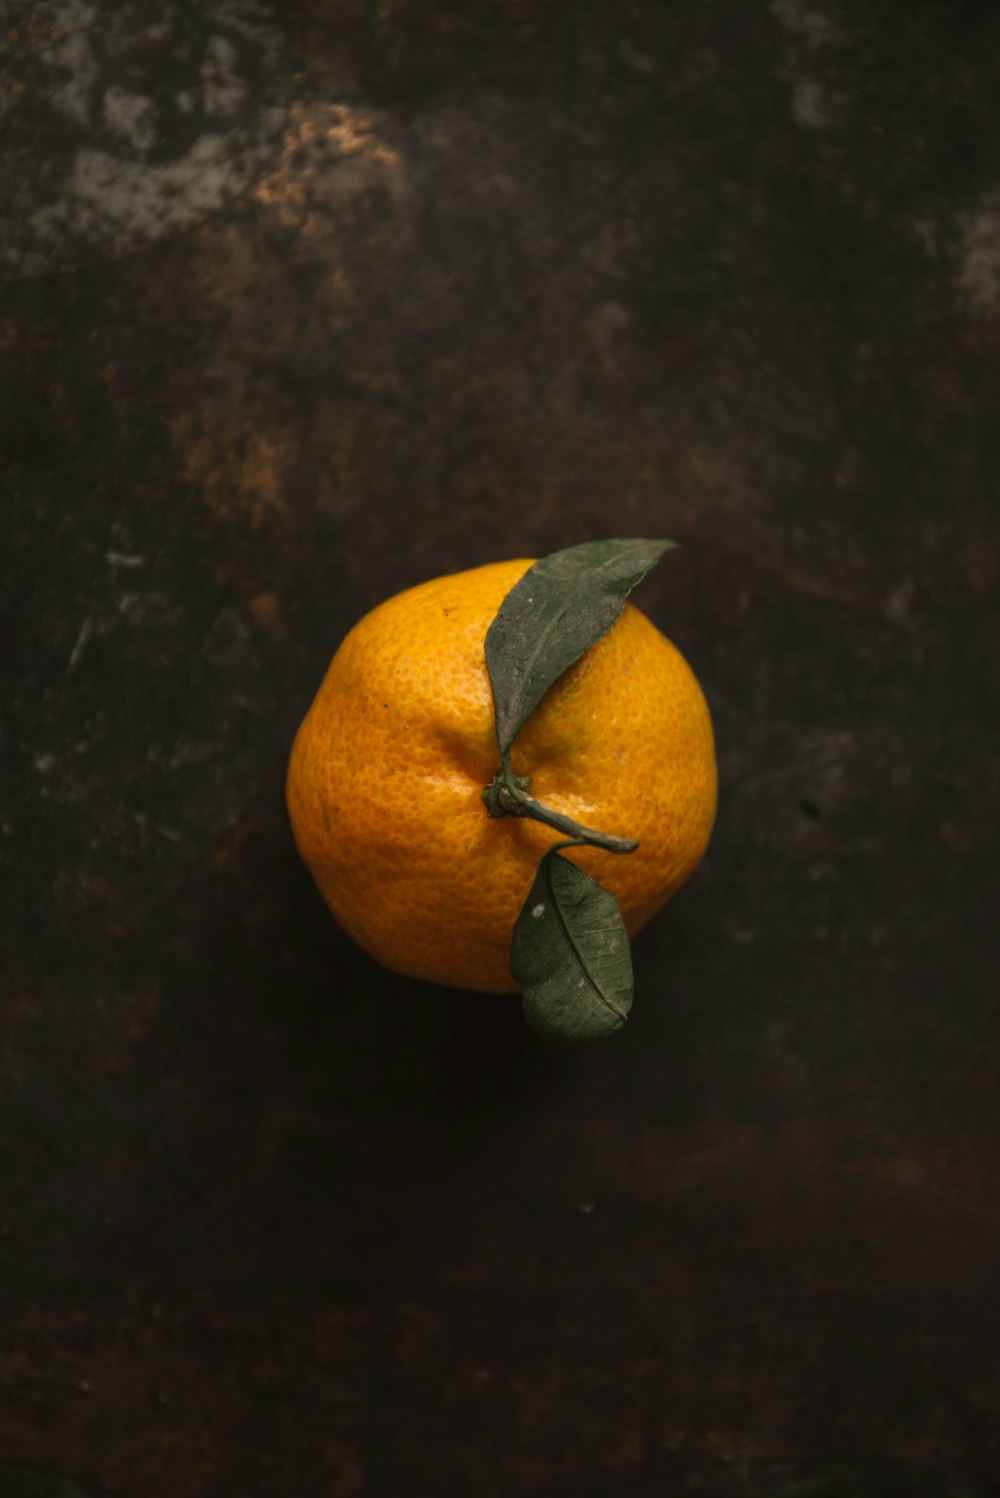 fruta laranja